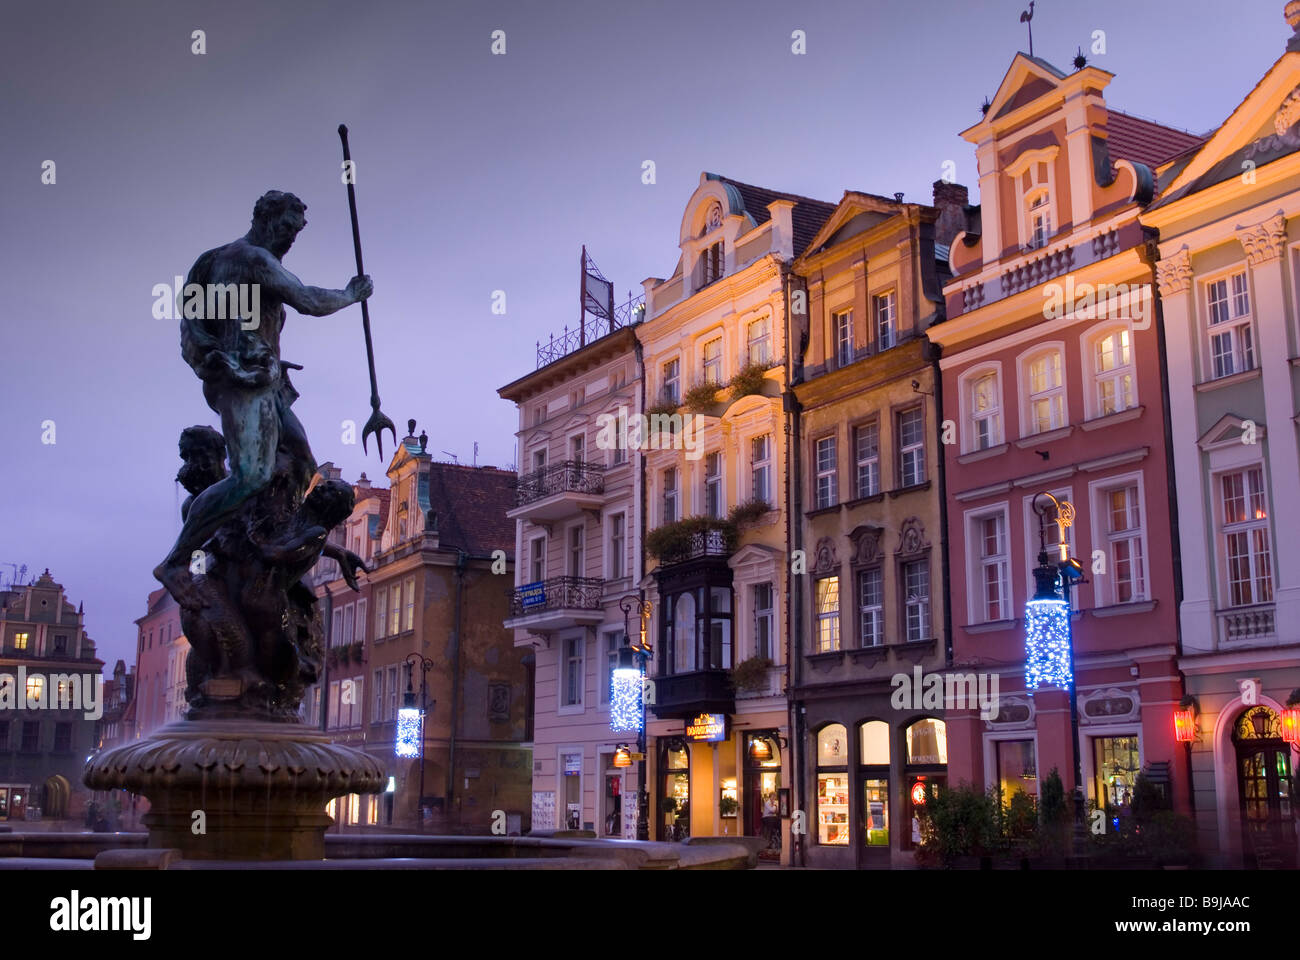 Una estatua de Neptuno sosteniendo una lanza se asienta en una fuente en la Plaza del Mercado Viejo (Stary Rynek) al atardecer, Poznan, Polonia Foto de stock